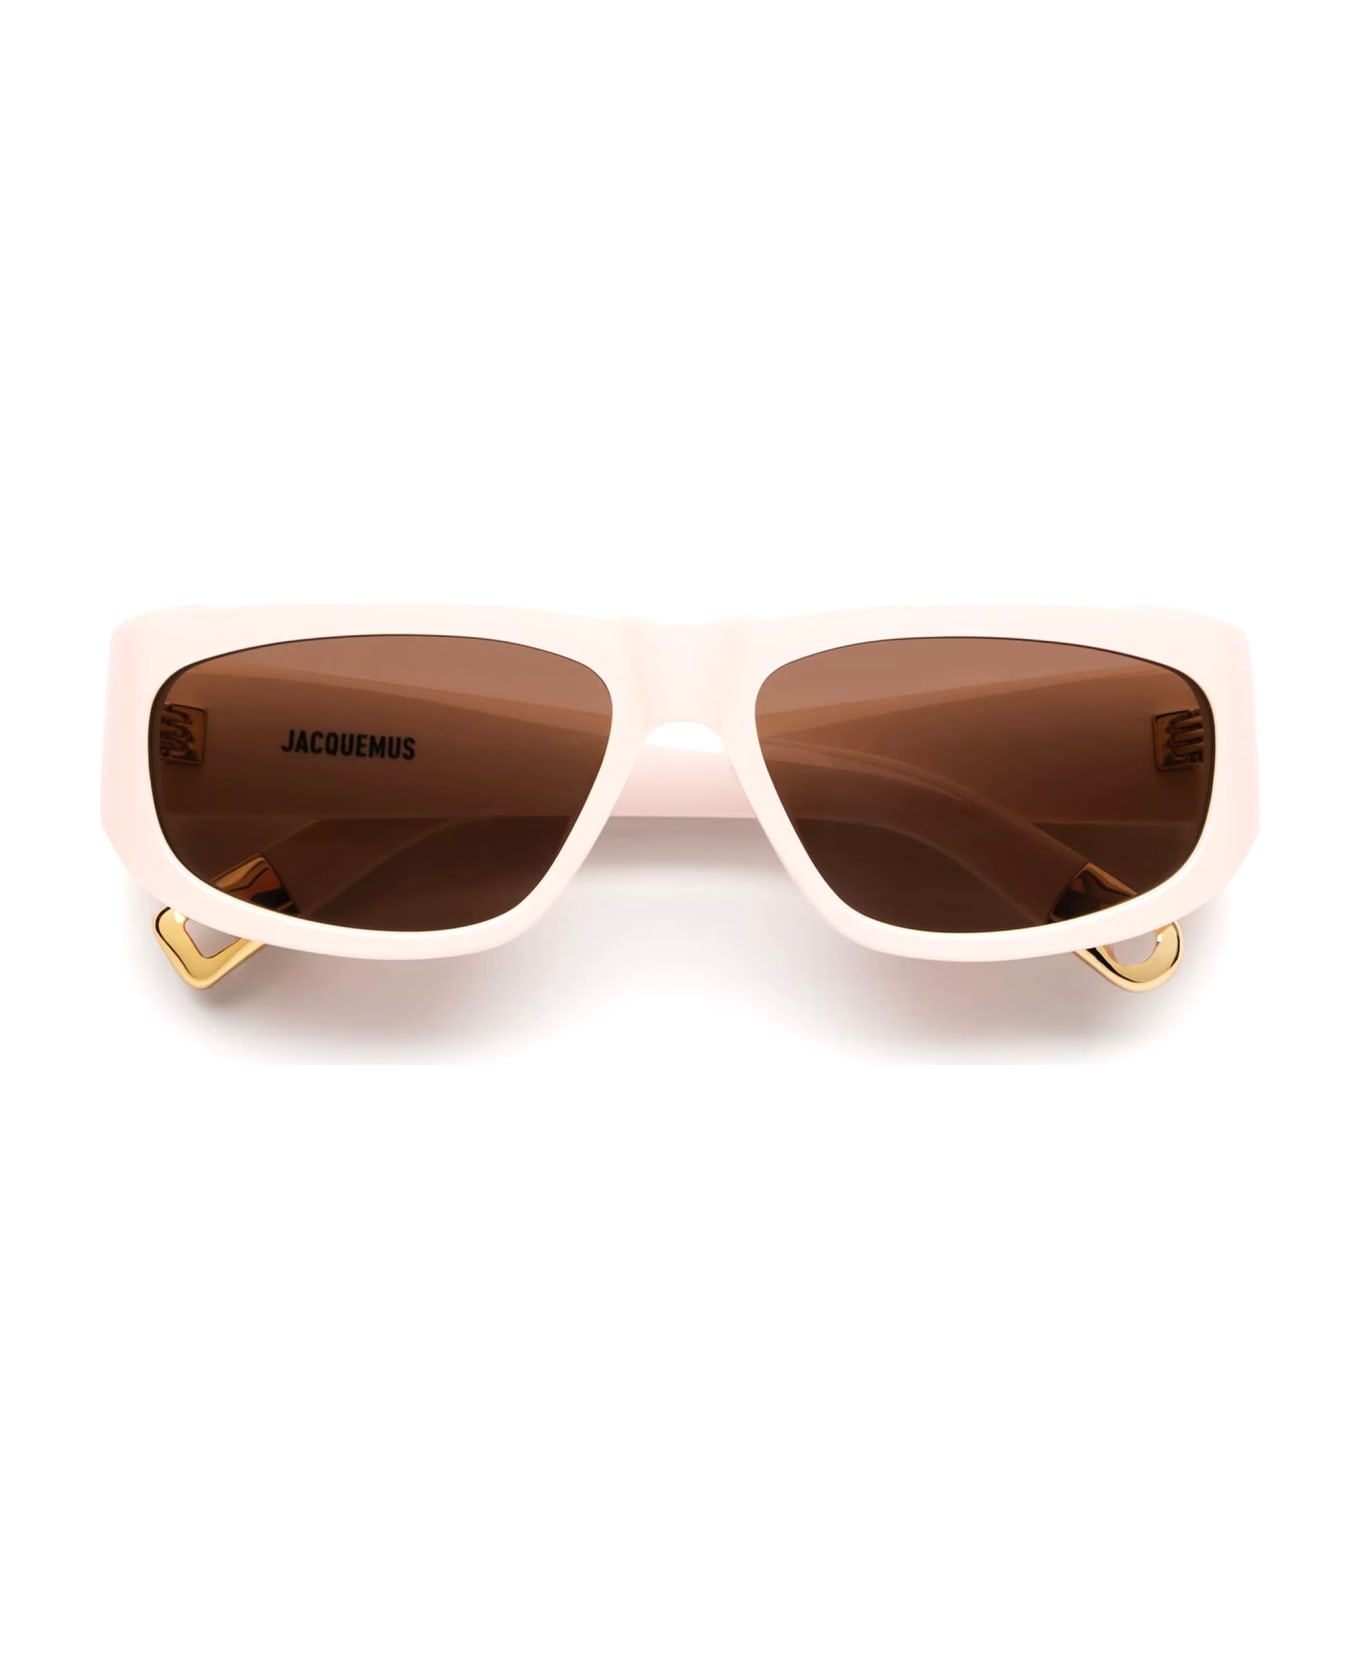 Jacquemus Pilota - Beige Sunglasses - cream